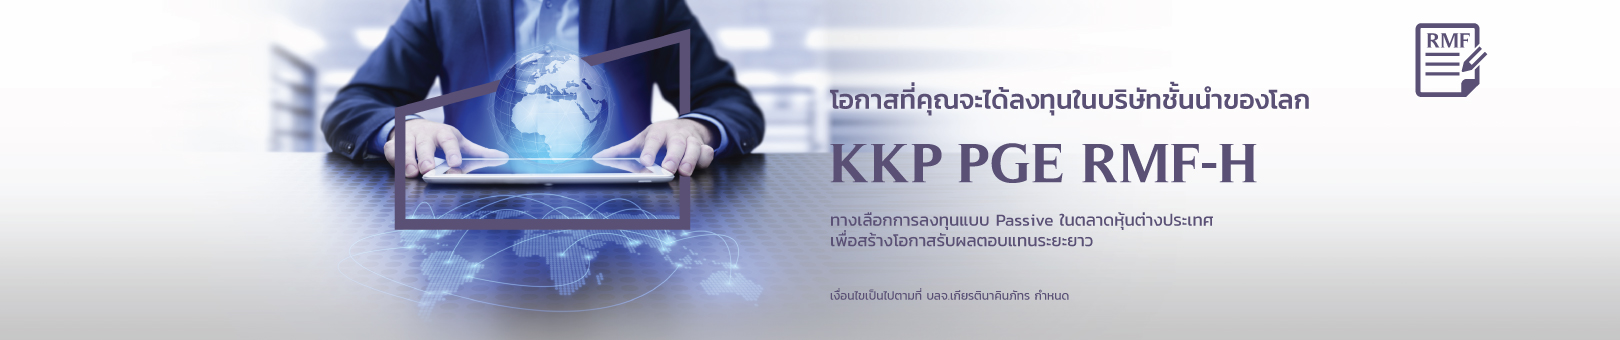 KKP-PGE_RMF-H-1620